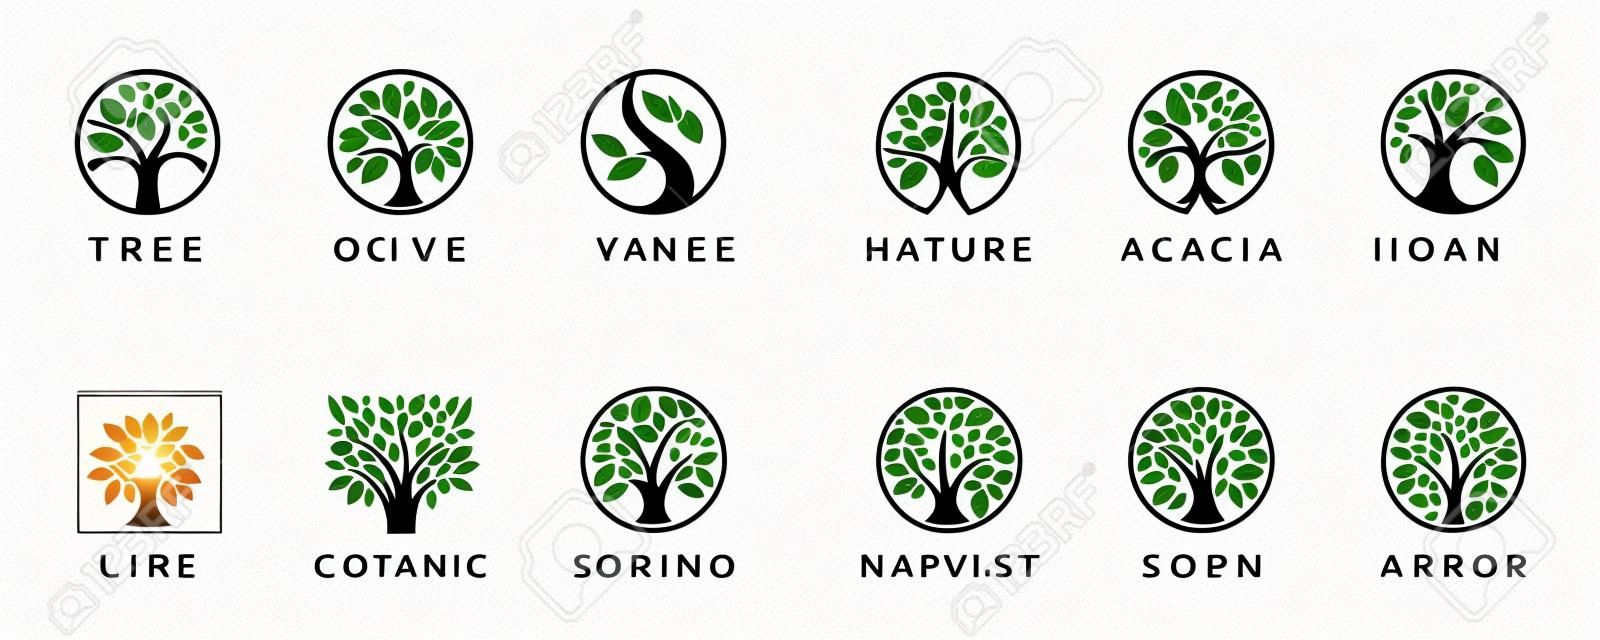 抽象的な生命の木のロゴアイコンセット。植物植物の自然のシンボル。葉のサインを持つ木の枝。自然なデザインエレメントのエンブレムコレクション。ベクターイラスト。